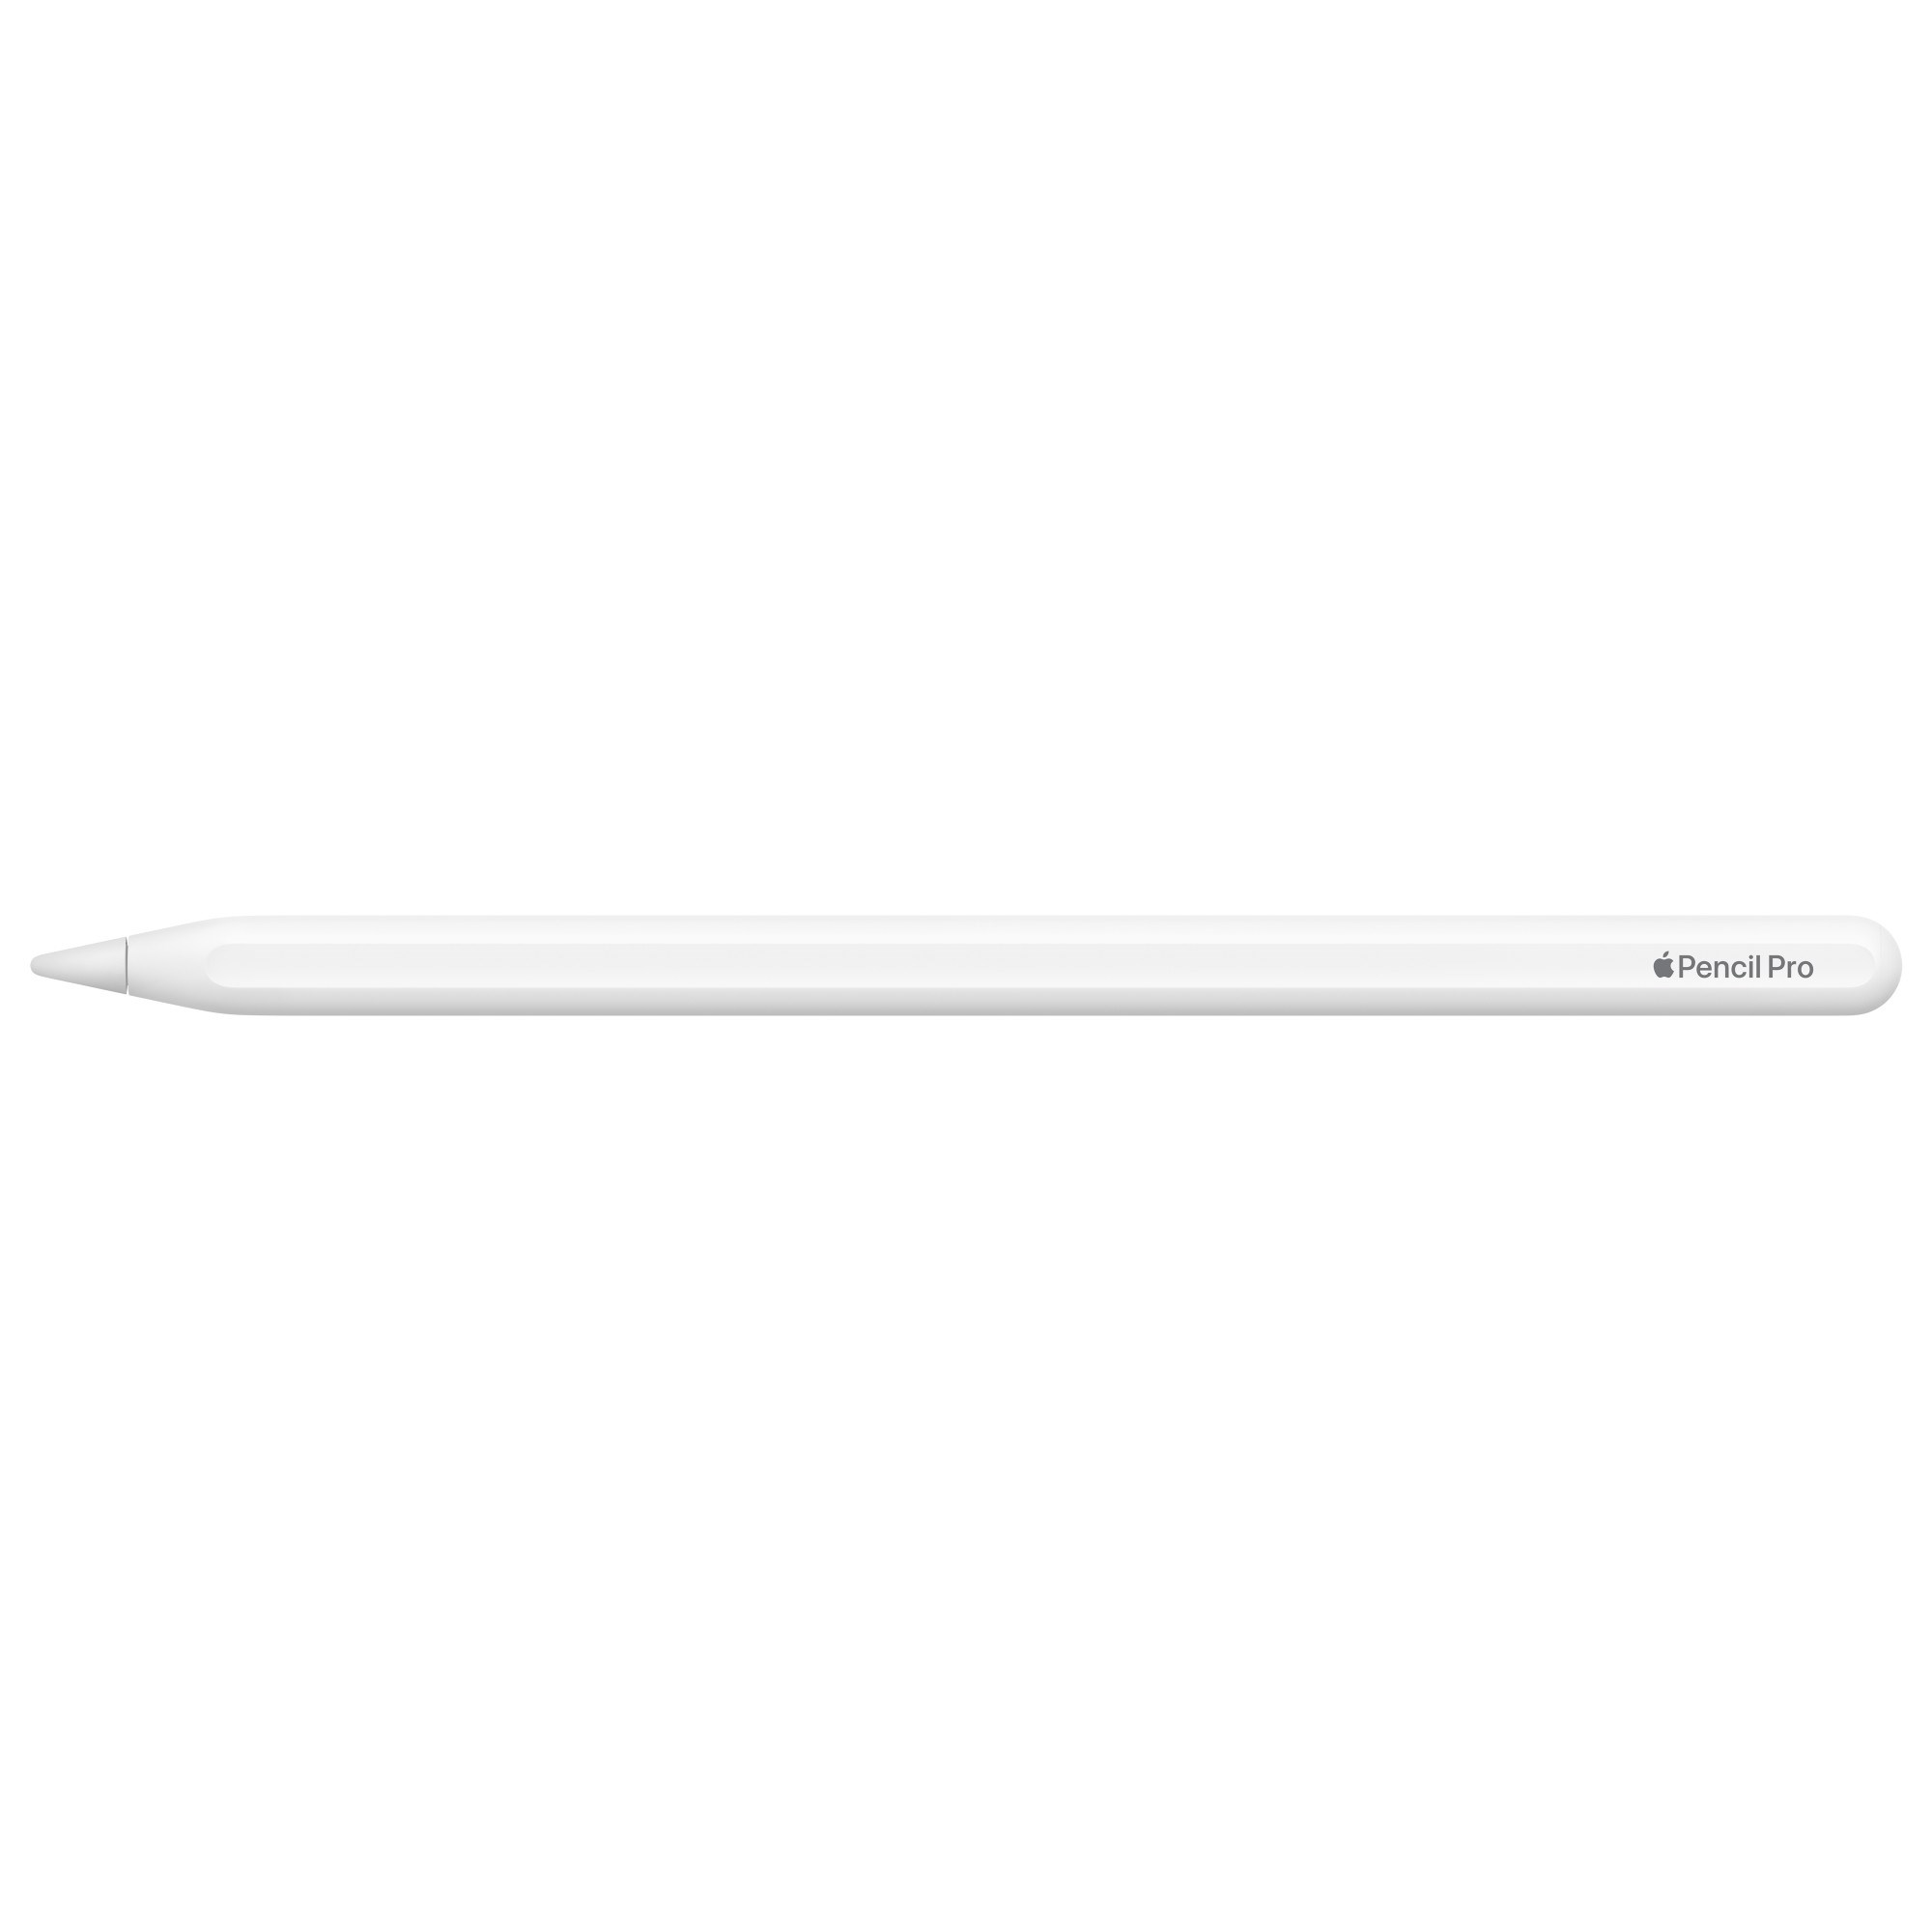 Apple Pencil Pro tanıtıldı: İşte özellikleri ve fiyatı